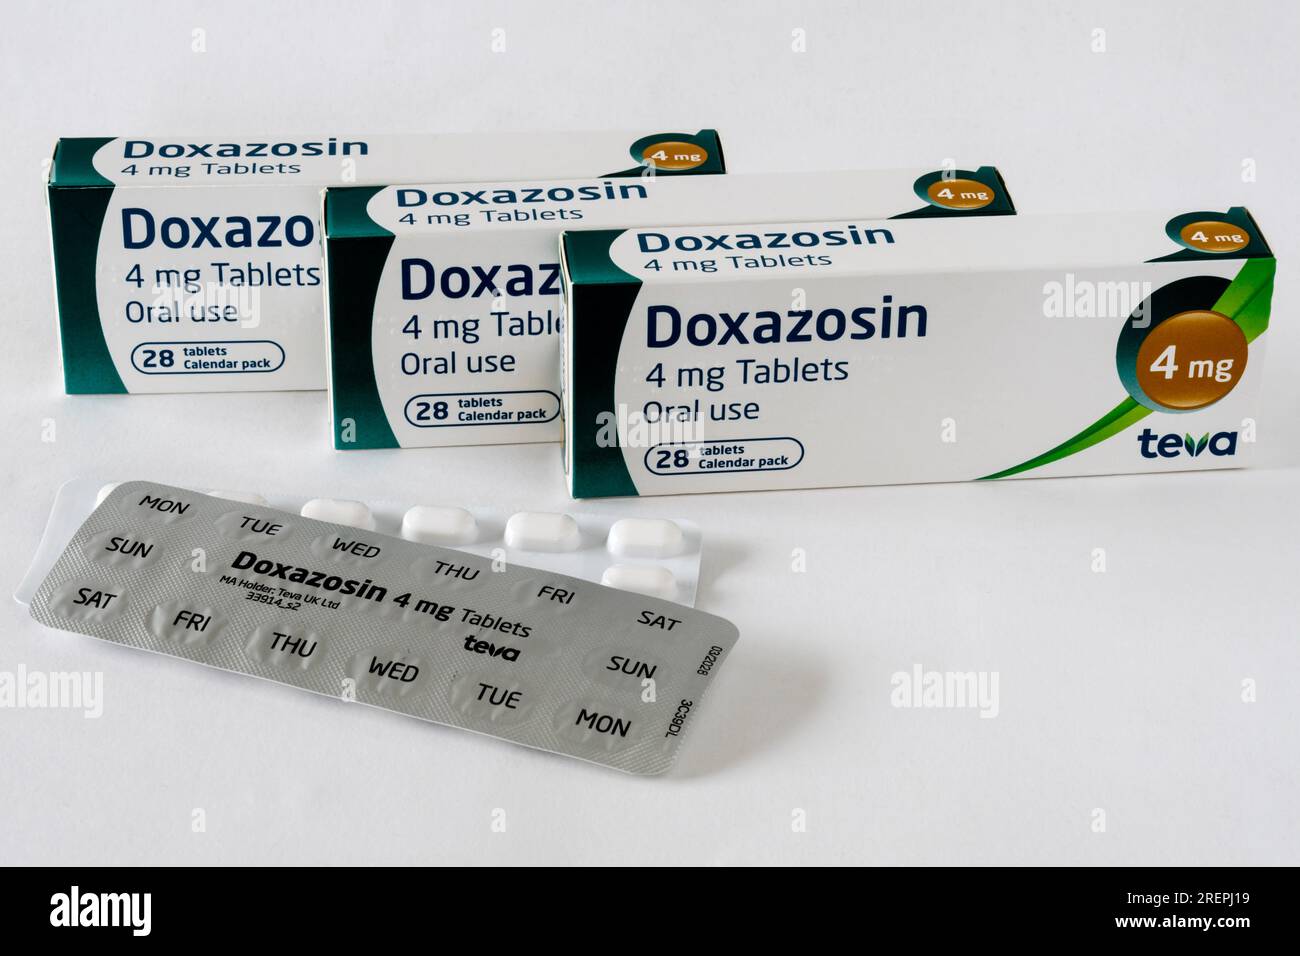 Bestandsbild von Packungen Doxazosin-Pillen zur Behandlung des Bluthochdrucks. Stockfoto